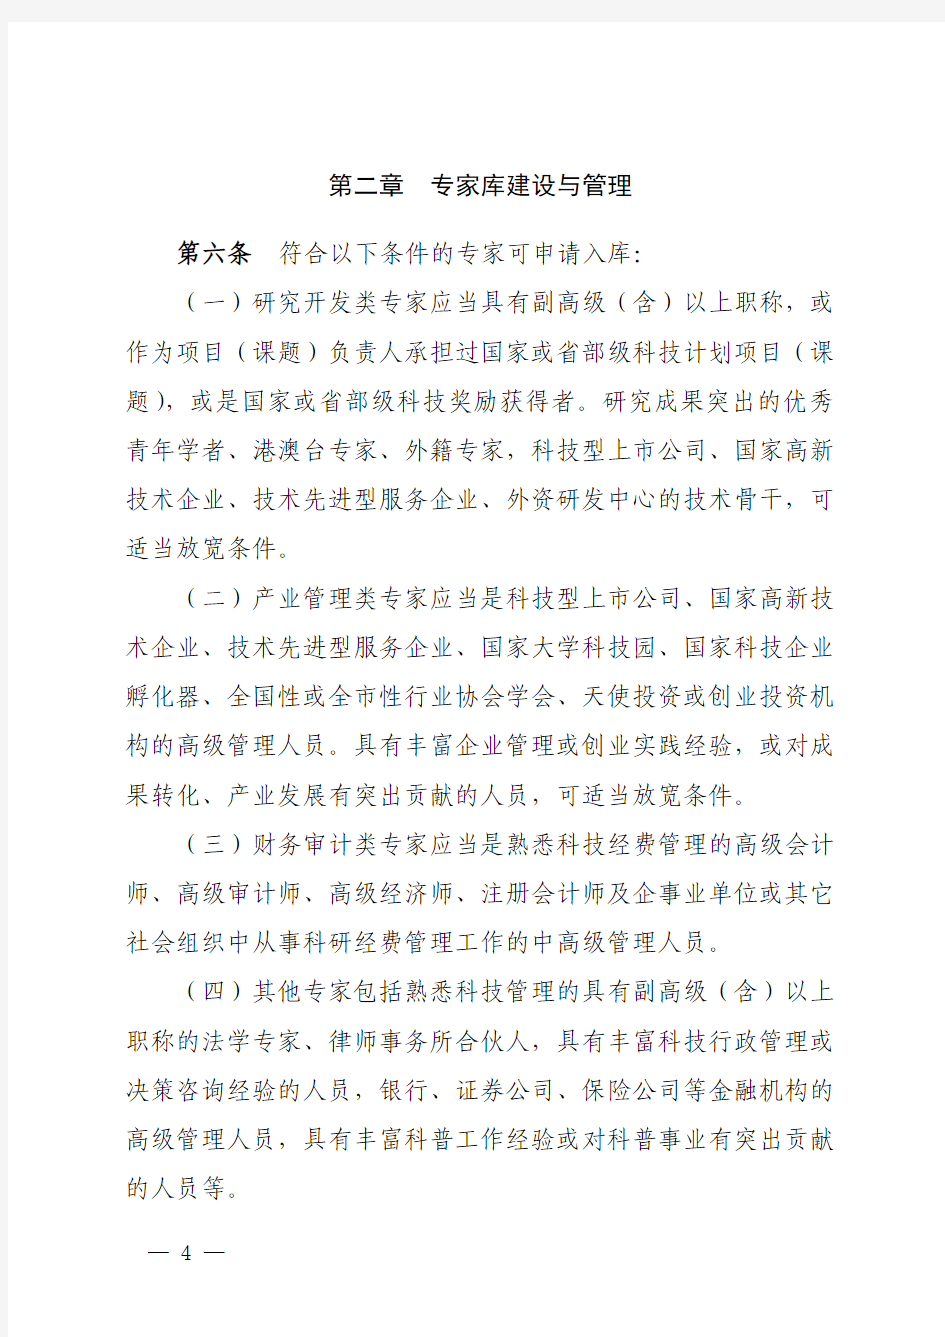 《上海市科技专家库管理办法》2020